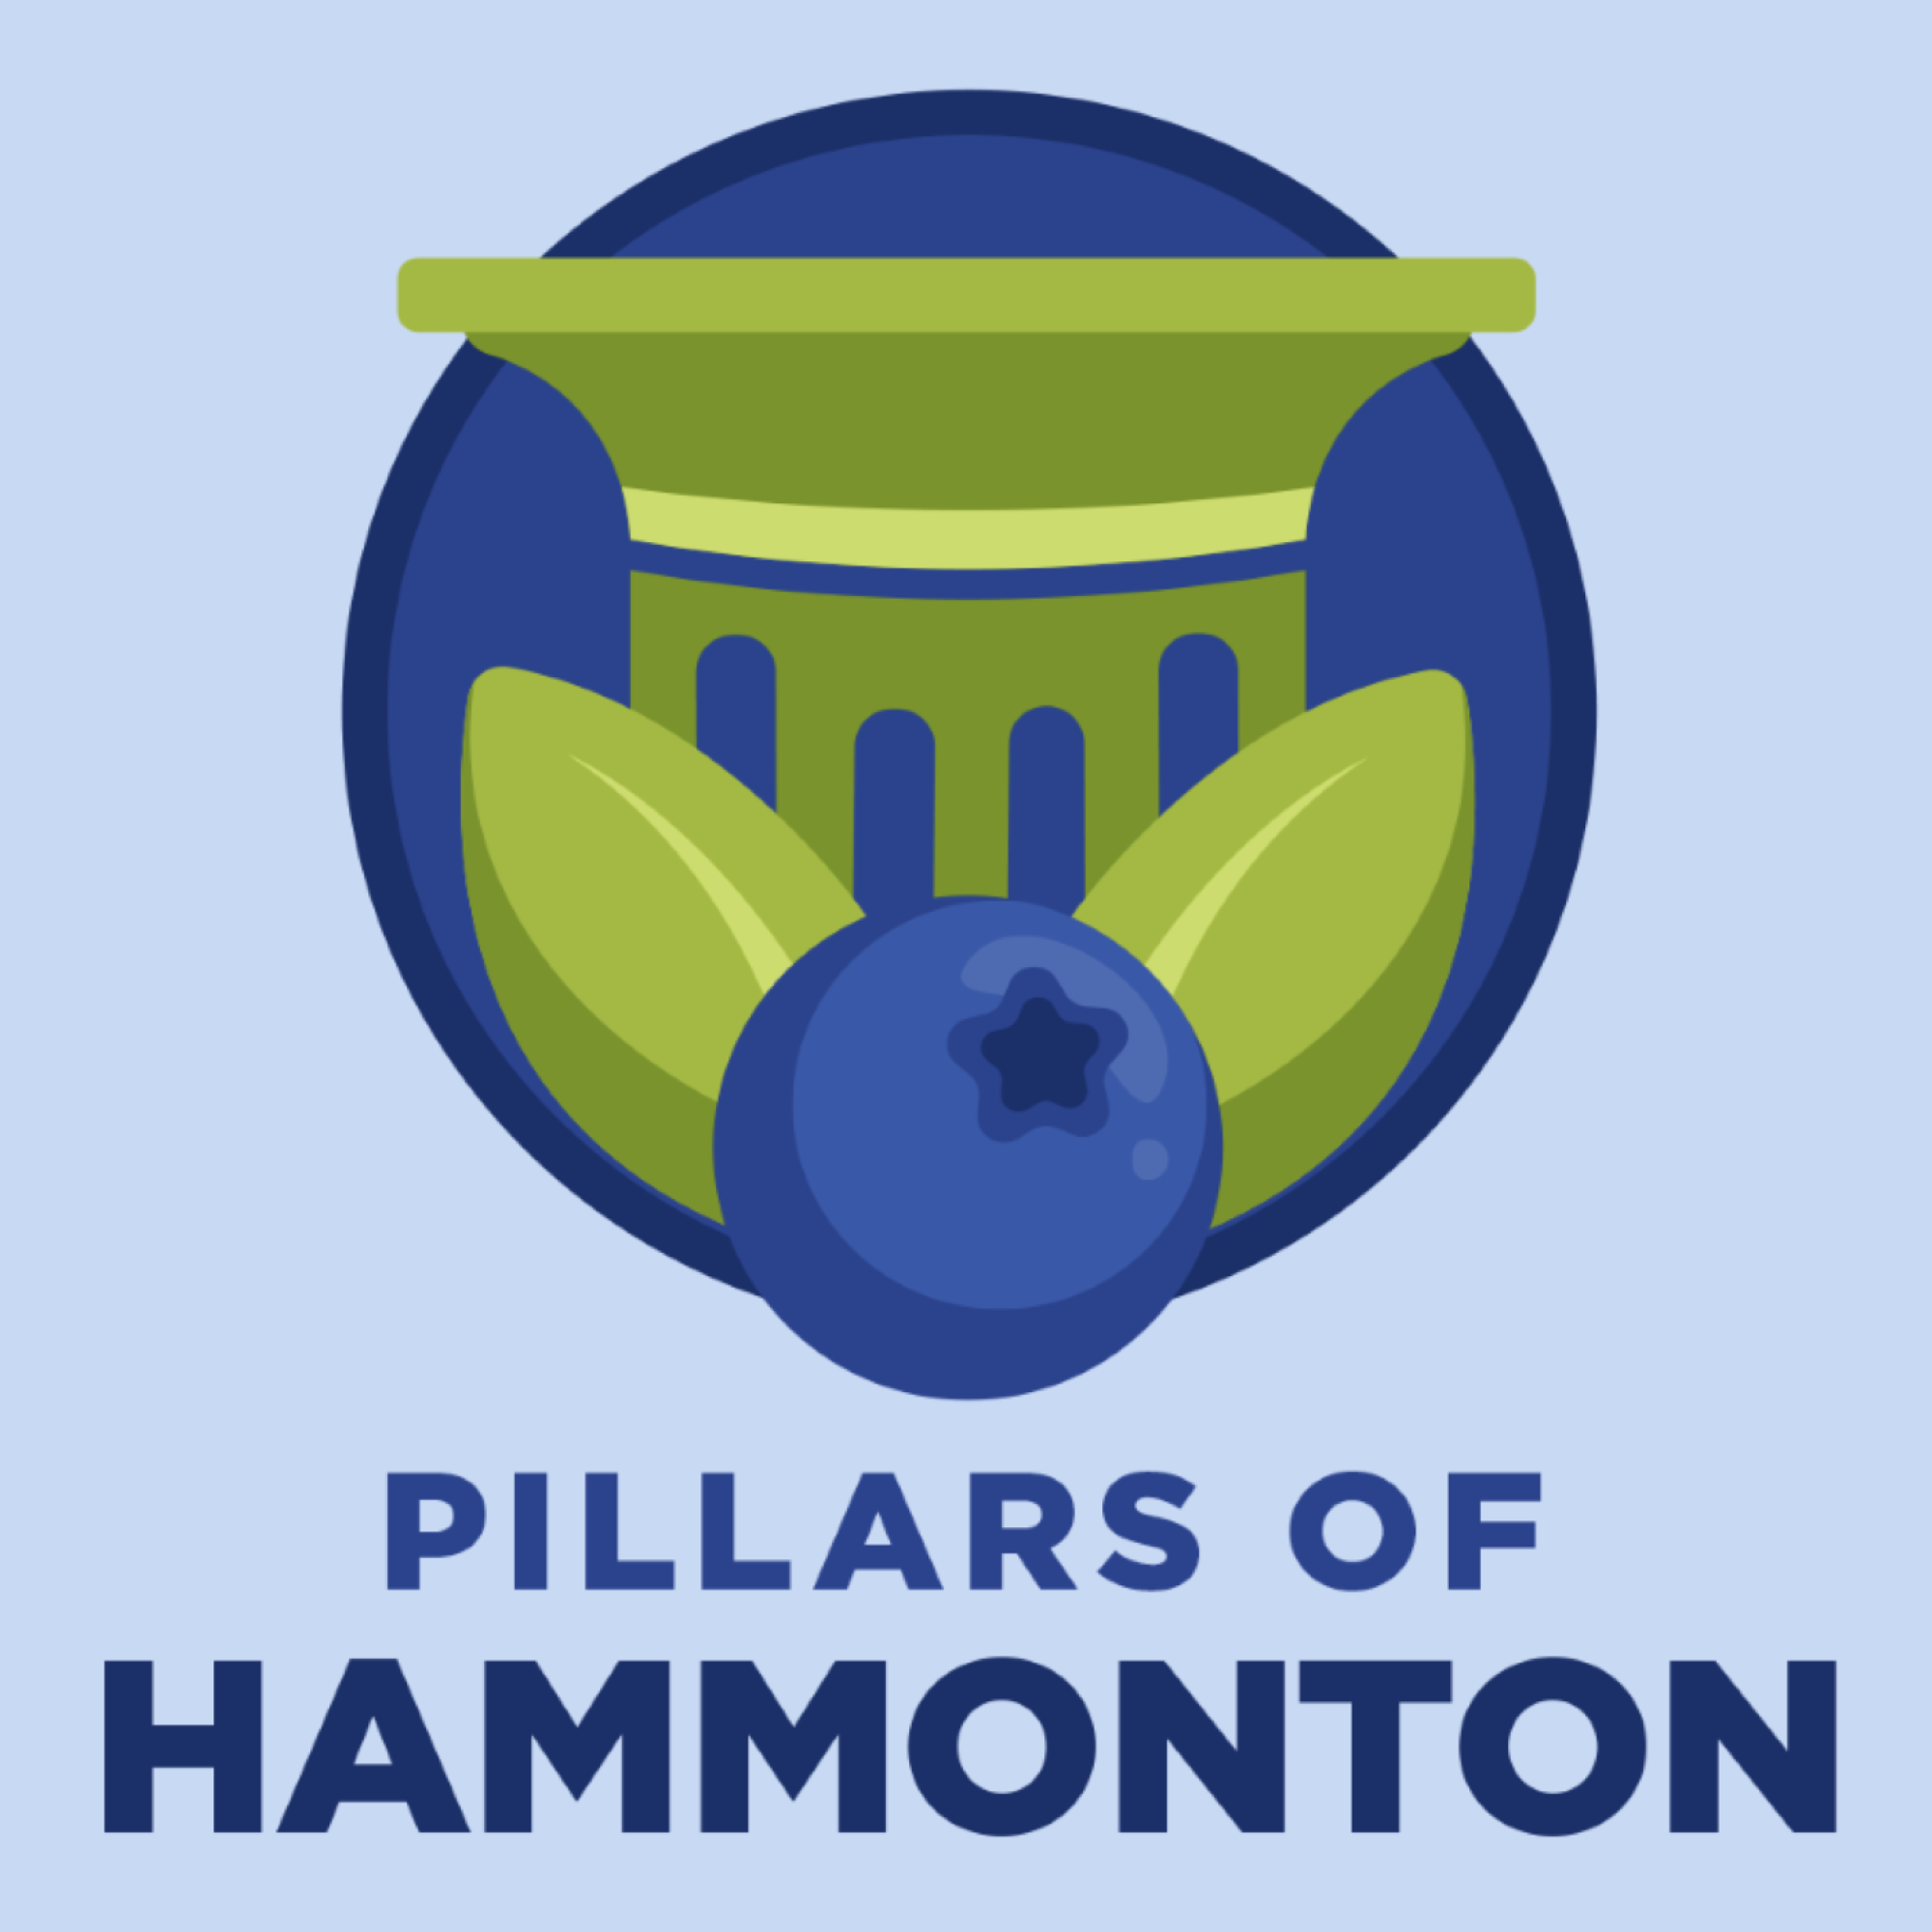 The Pillars of Hammonton